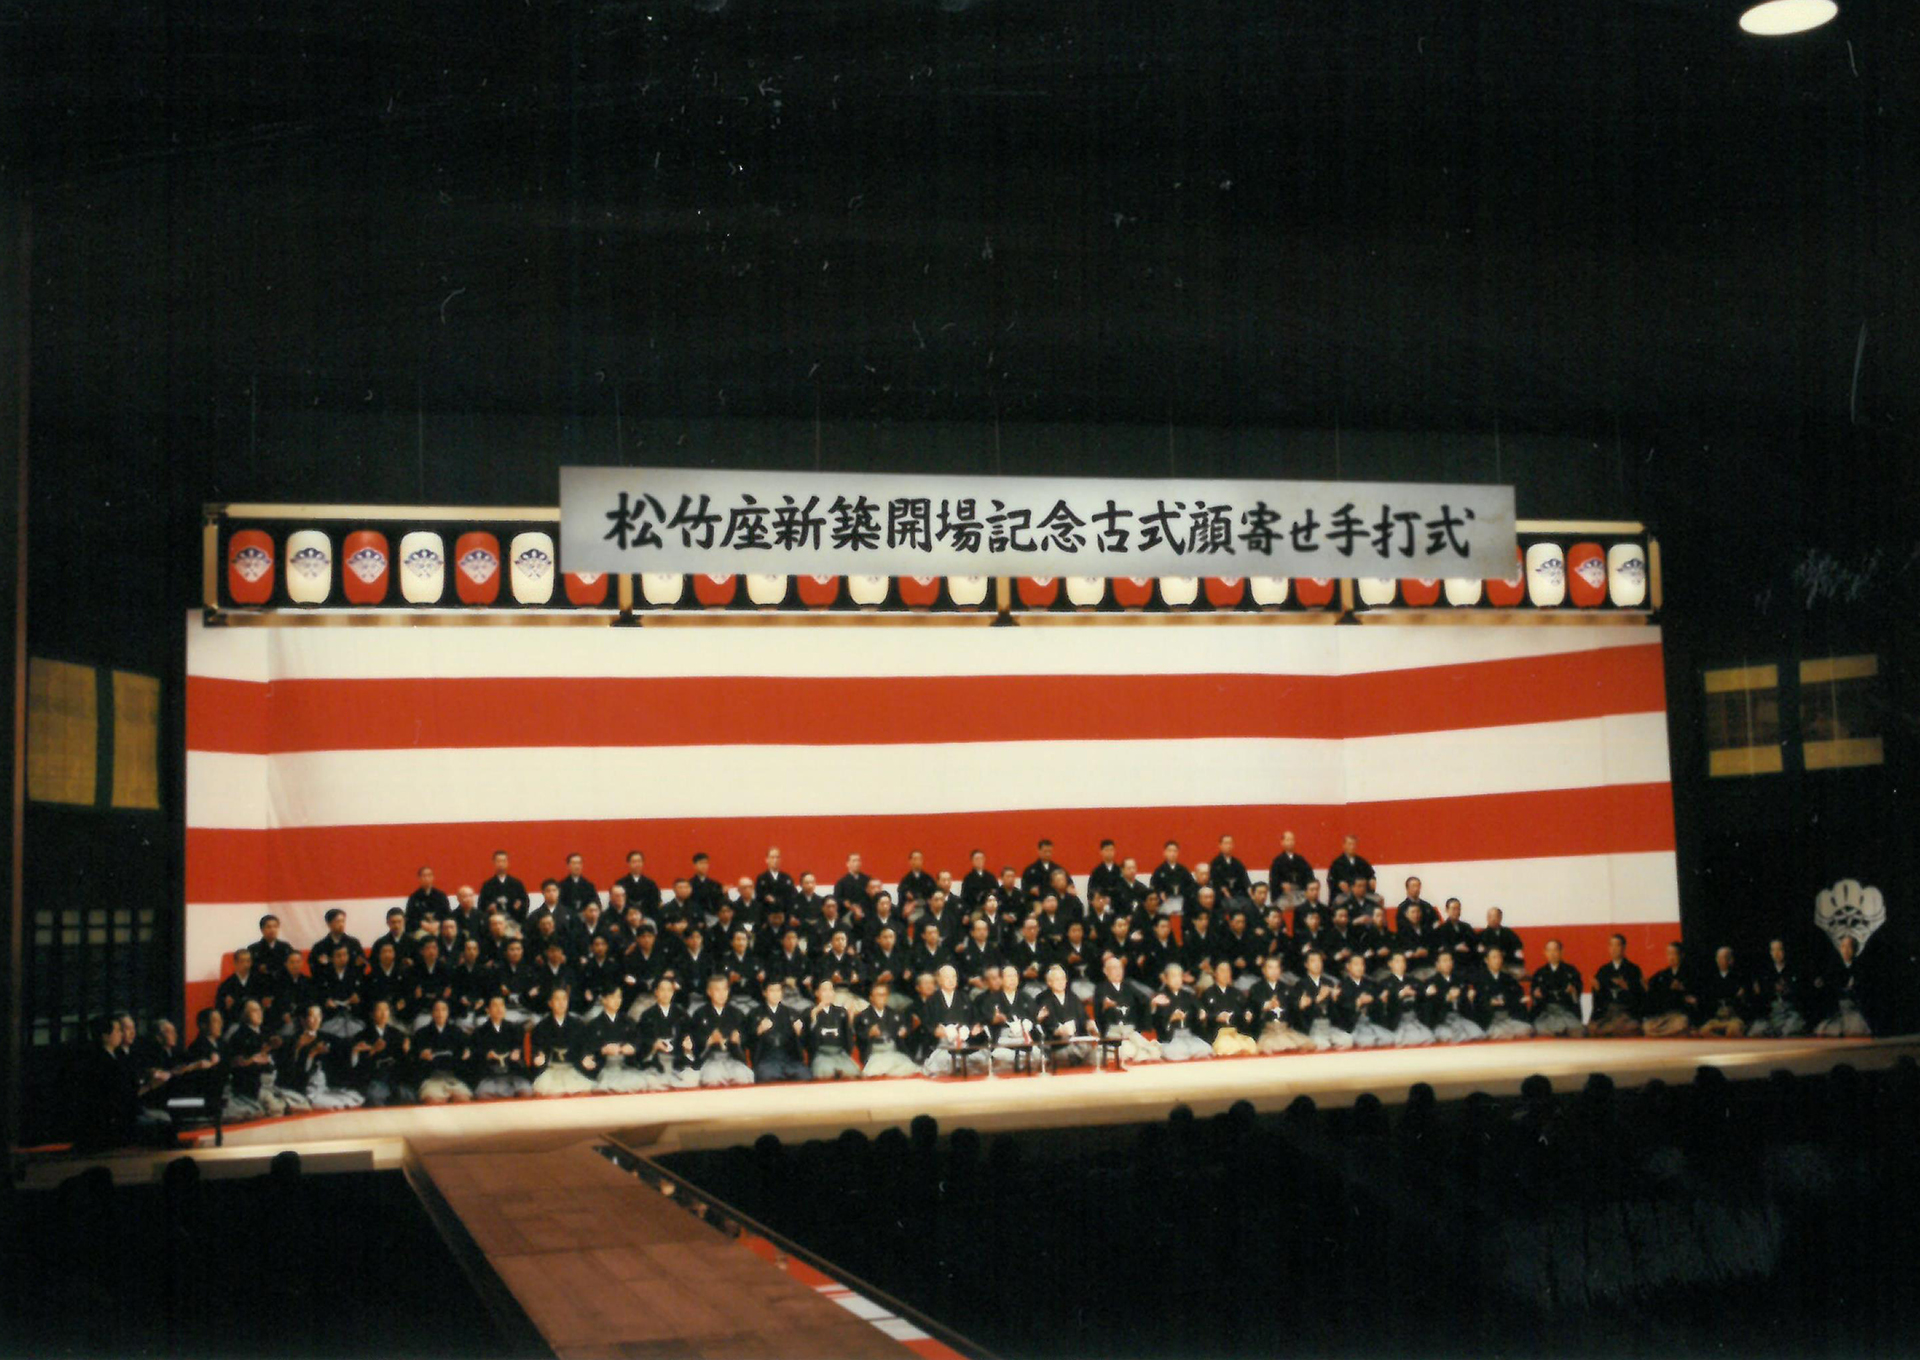 平成9(1997)年2月新築開場式「古式顔寄せ手打ち式」の様子